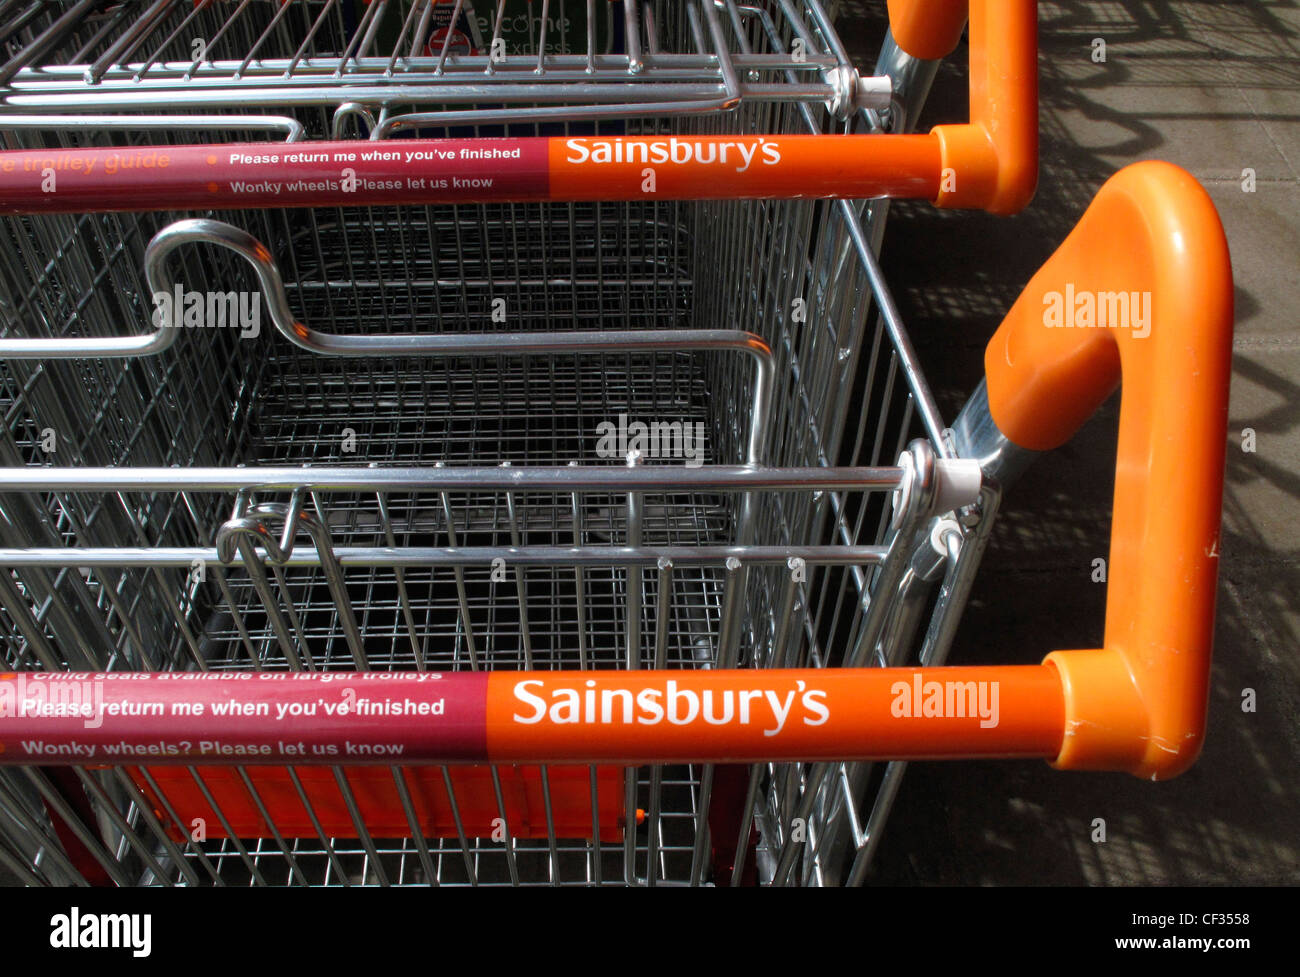 Supermercado Sainsbury's trolleys anidado fuera de una tienda. Foto de stock